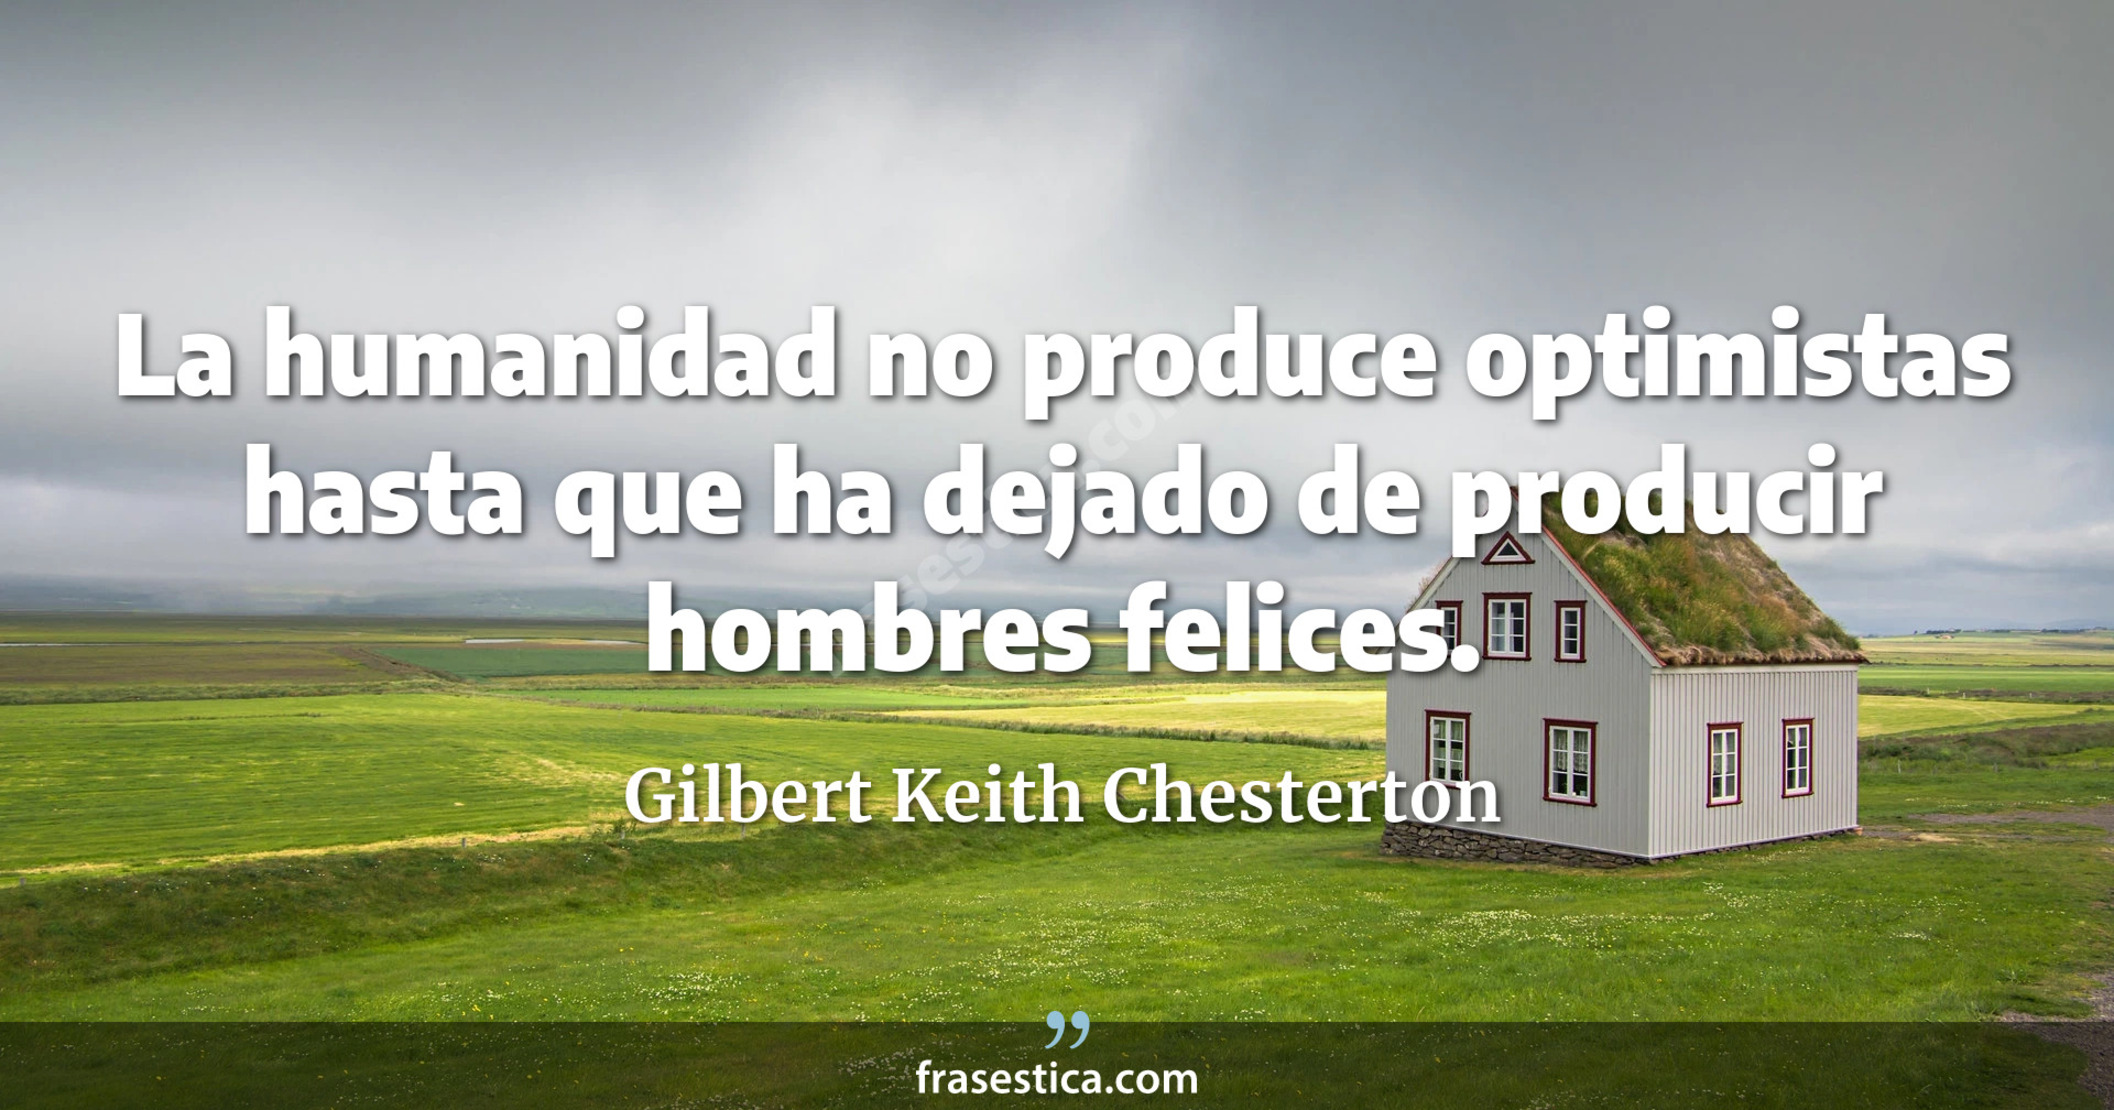 La humanidad no produce optimistas hasta que ha dejado de producir hombres felices. - Gilbert Keith Chesterton